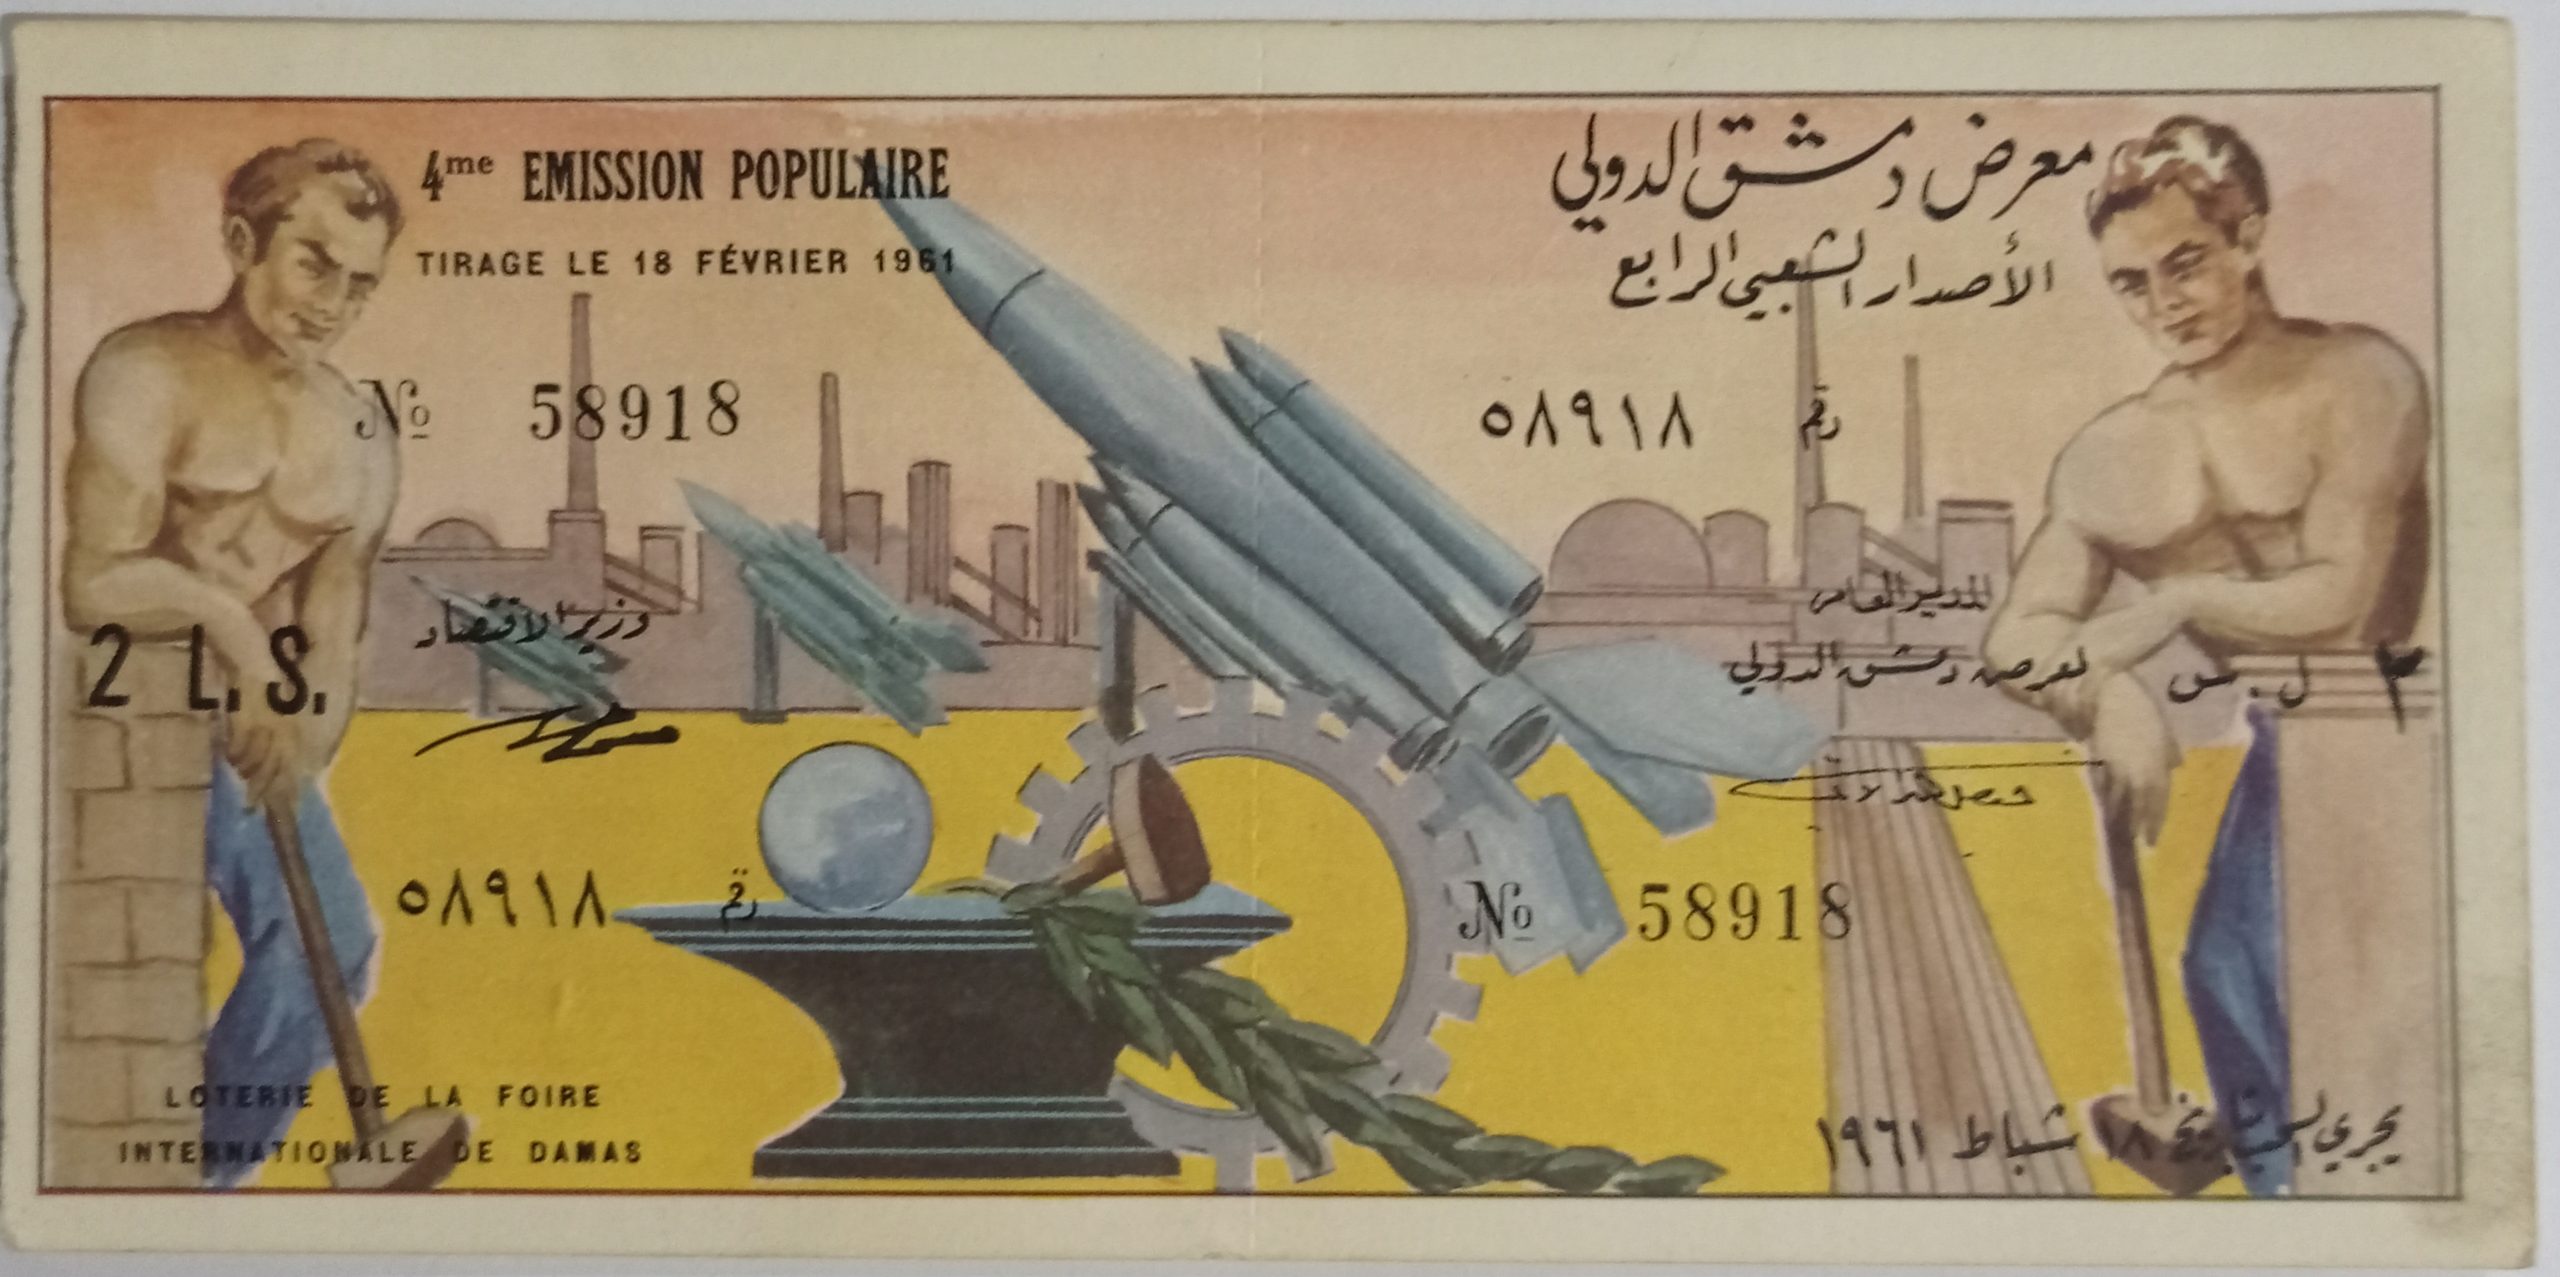 التاريخ السوري المعاصر - يانصيب معرض دمشق الدولي - الإصدار الشعبي الرابع عام 1961